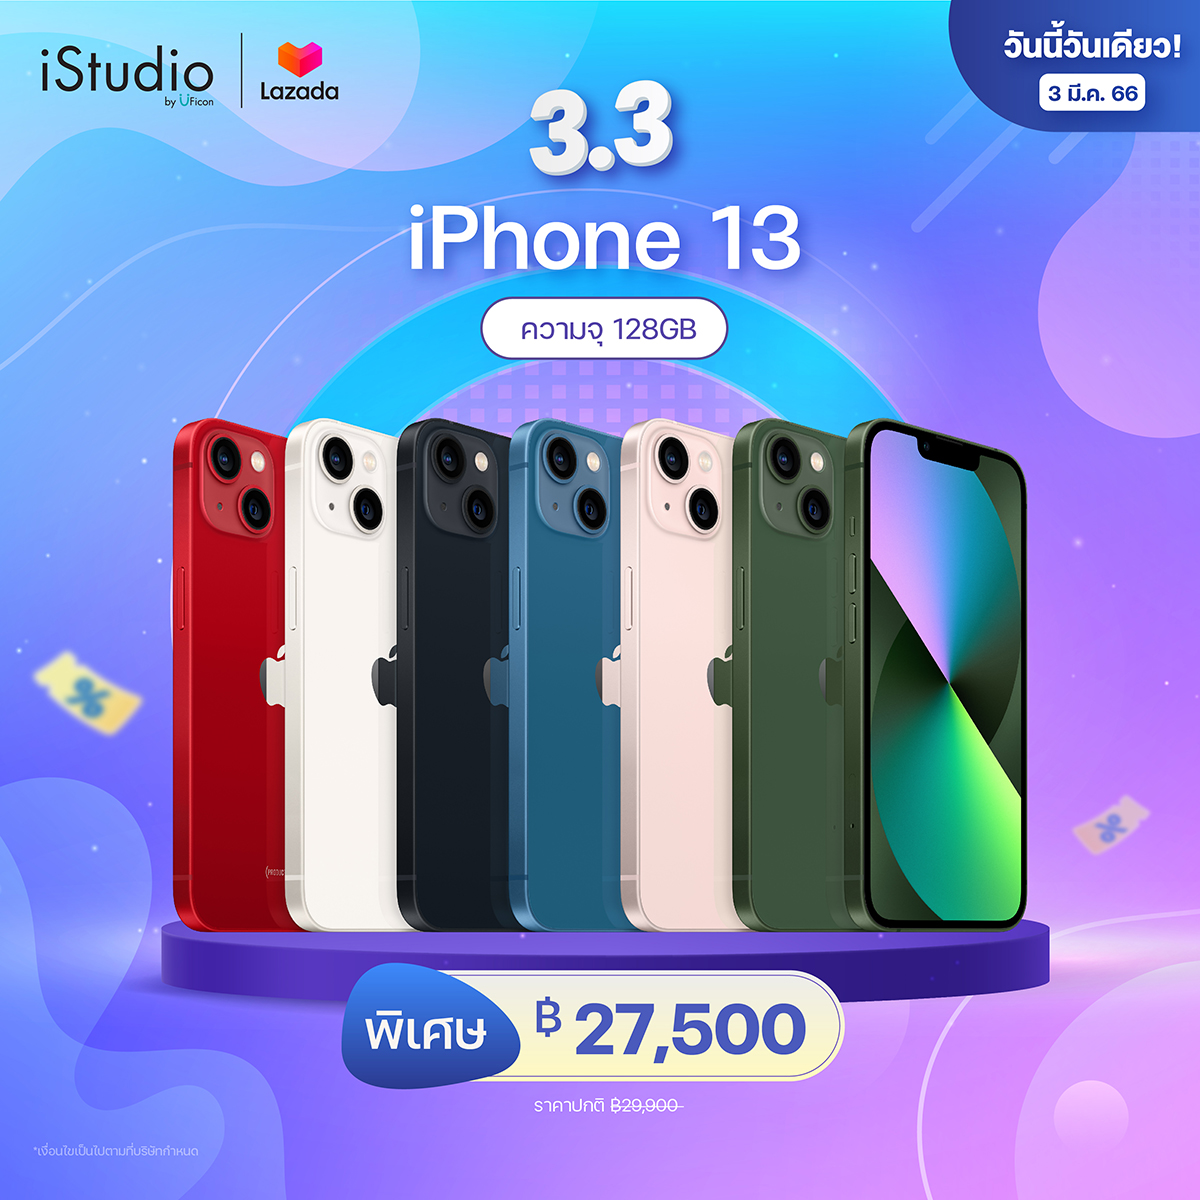 โปรโมชั่น Flash Sale : Apple iPhone 13 [iStudio by UFicon]